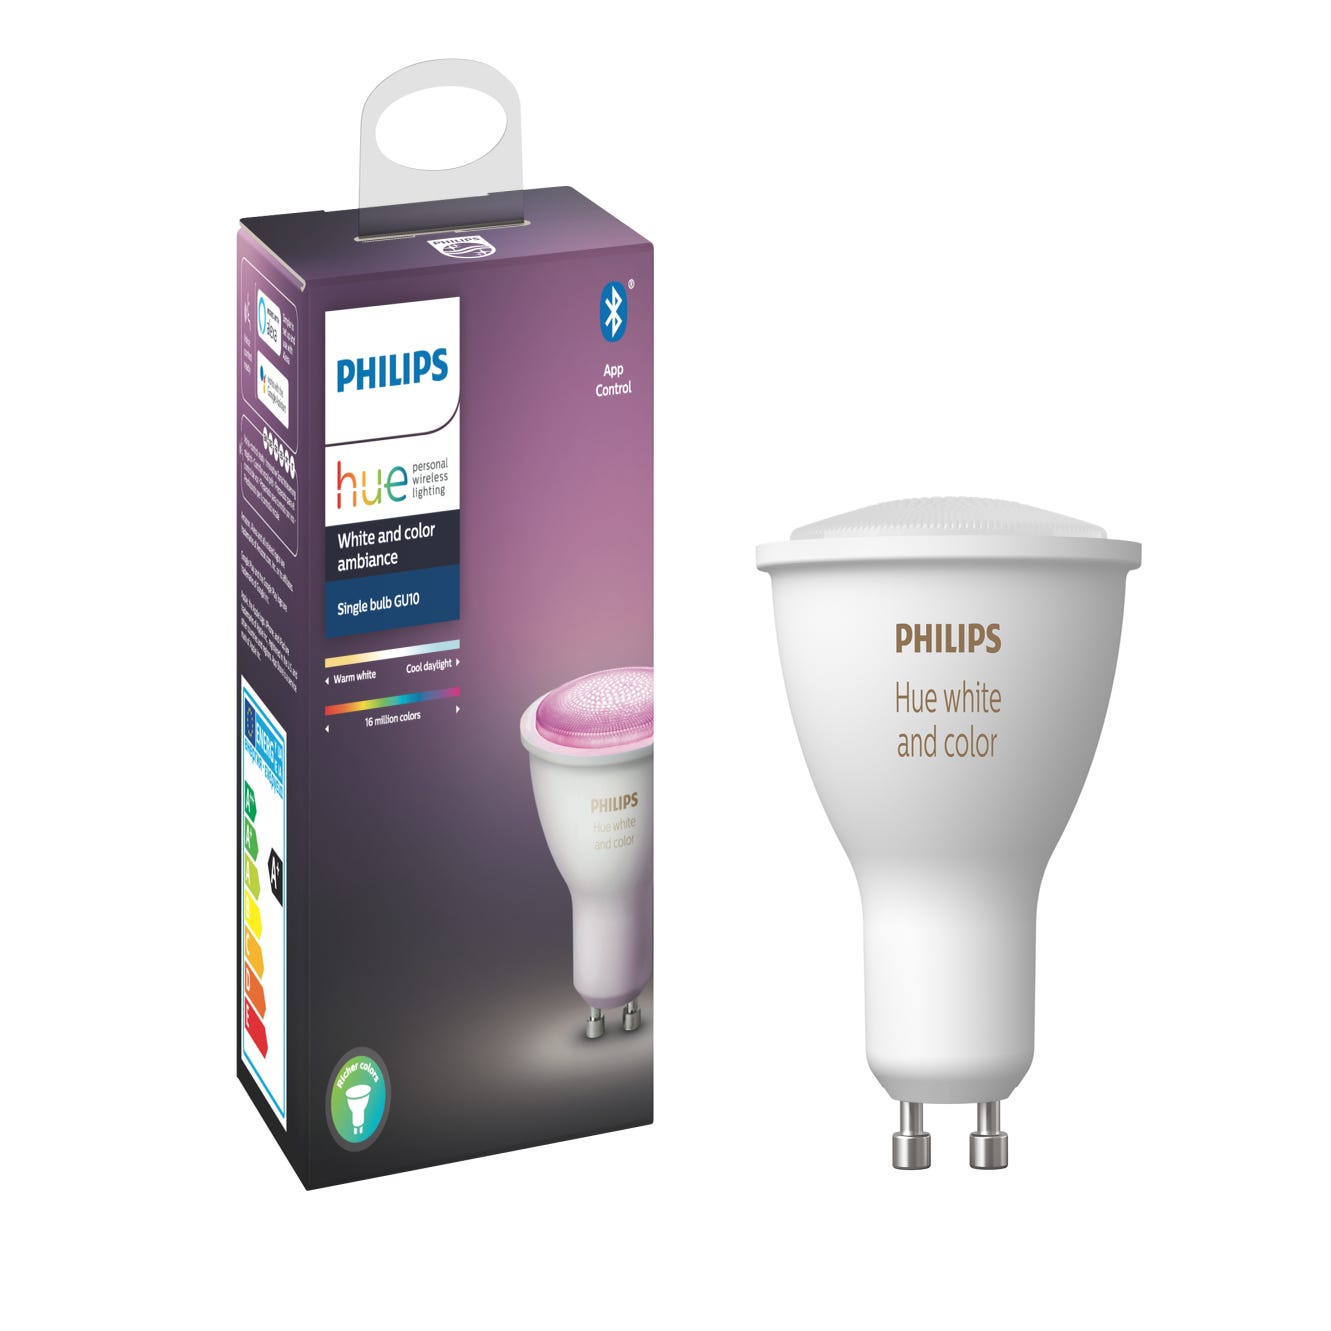 PHILLIPS HUE - Pack de 2 bombillas Inteligentes LED (6,5 W)